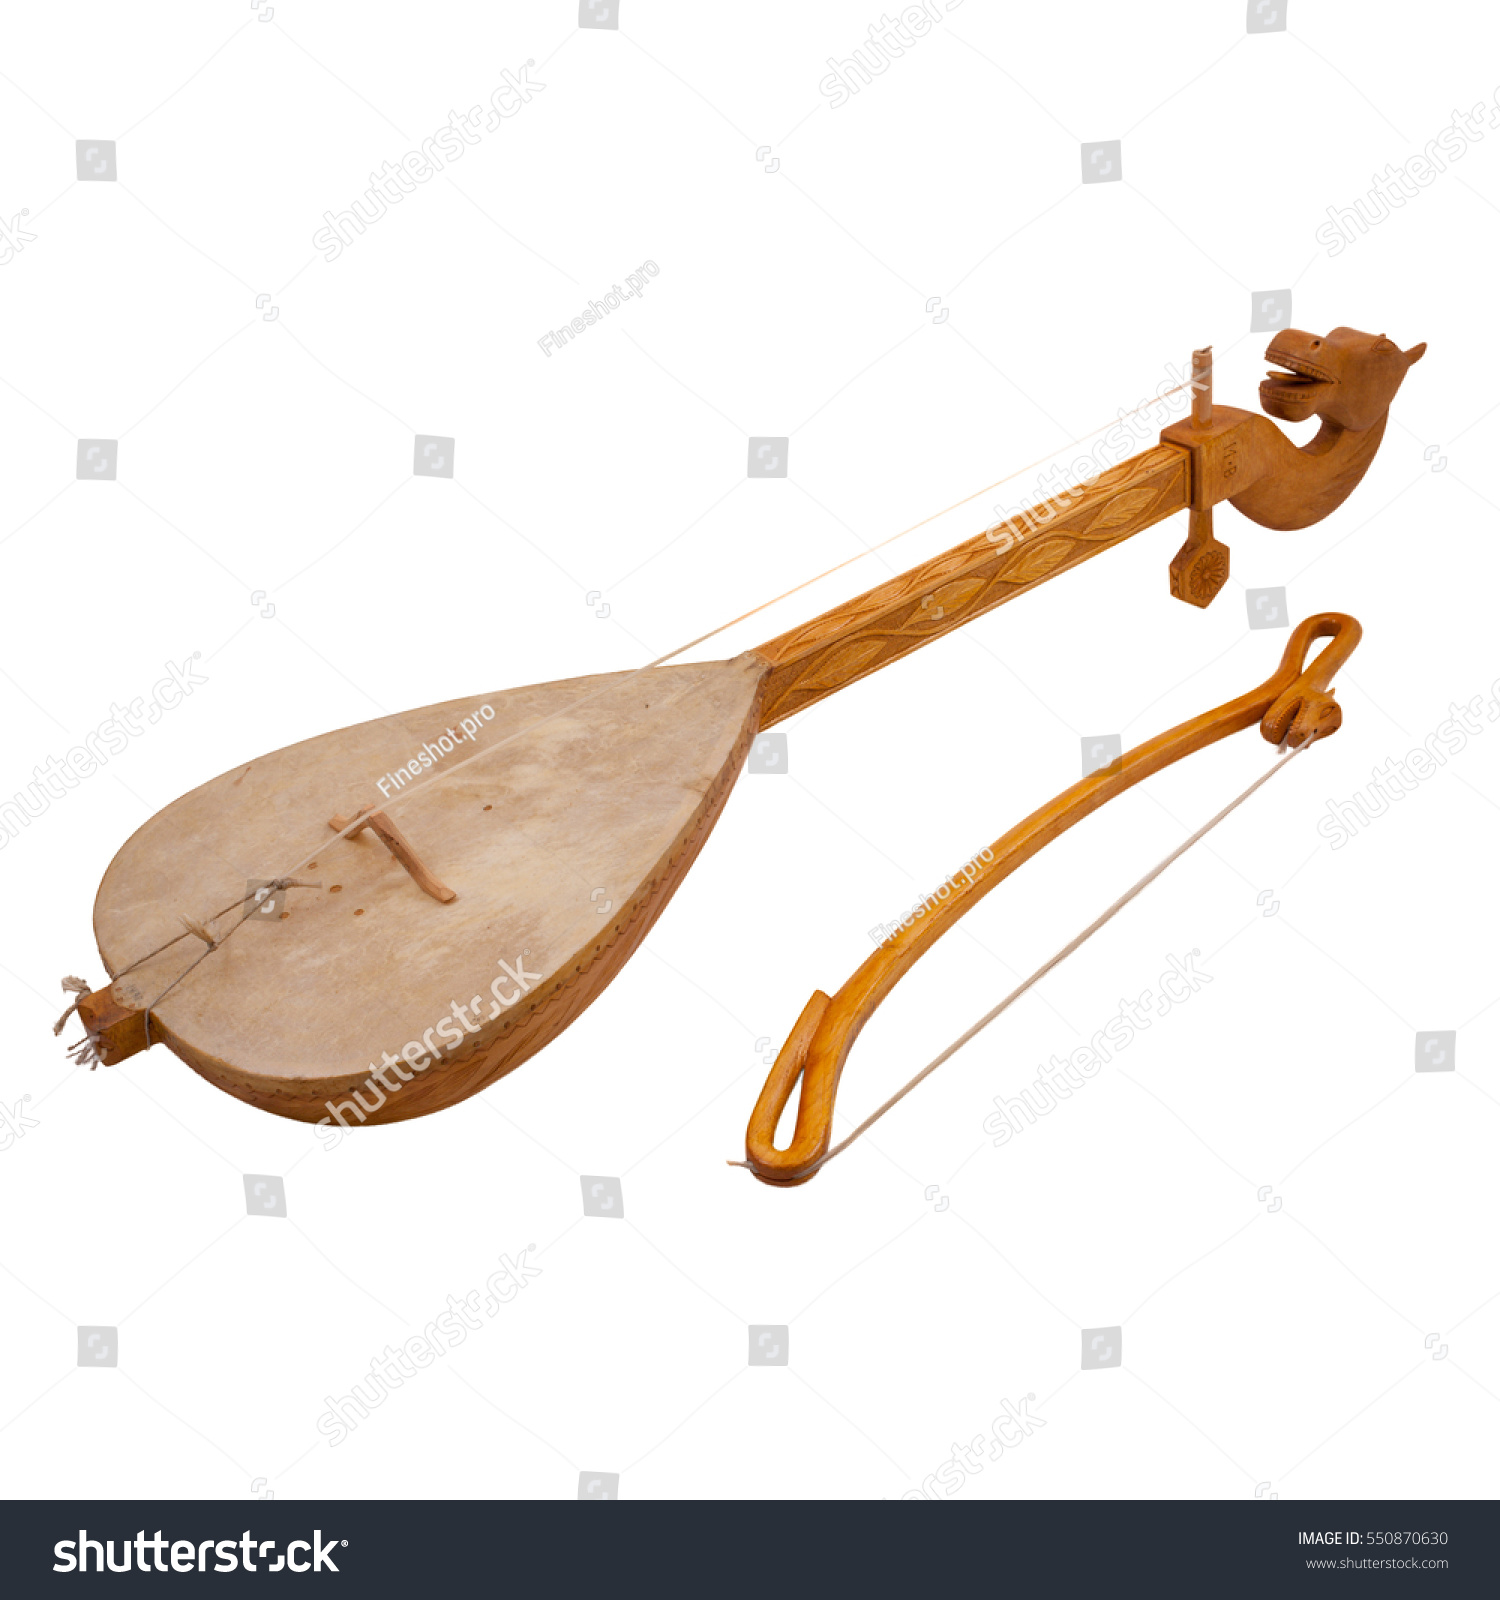 Струнный Щипковый Музыкальный Инструмент 6 Букв